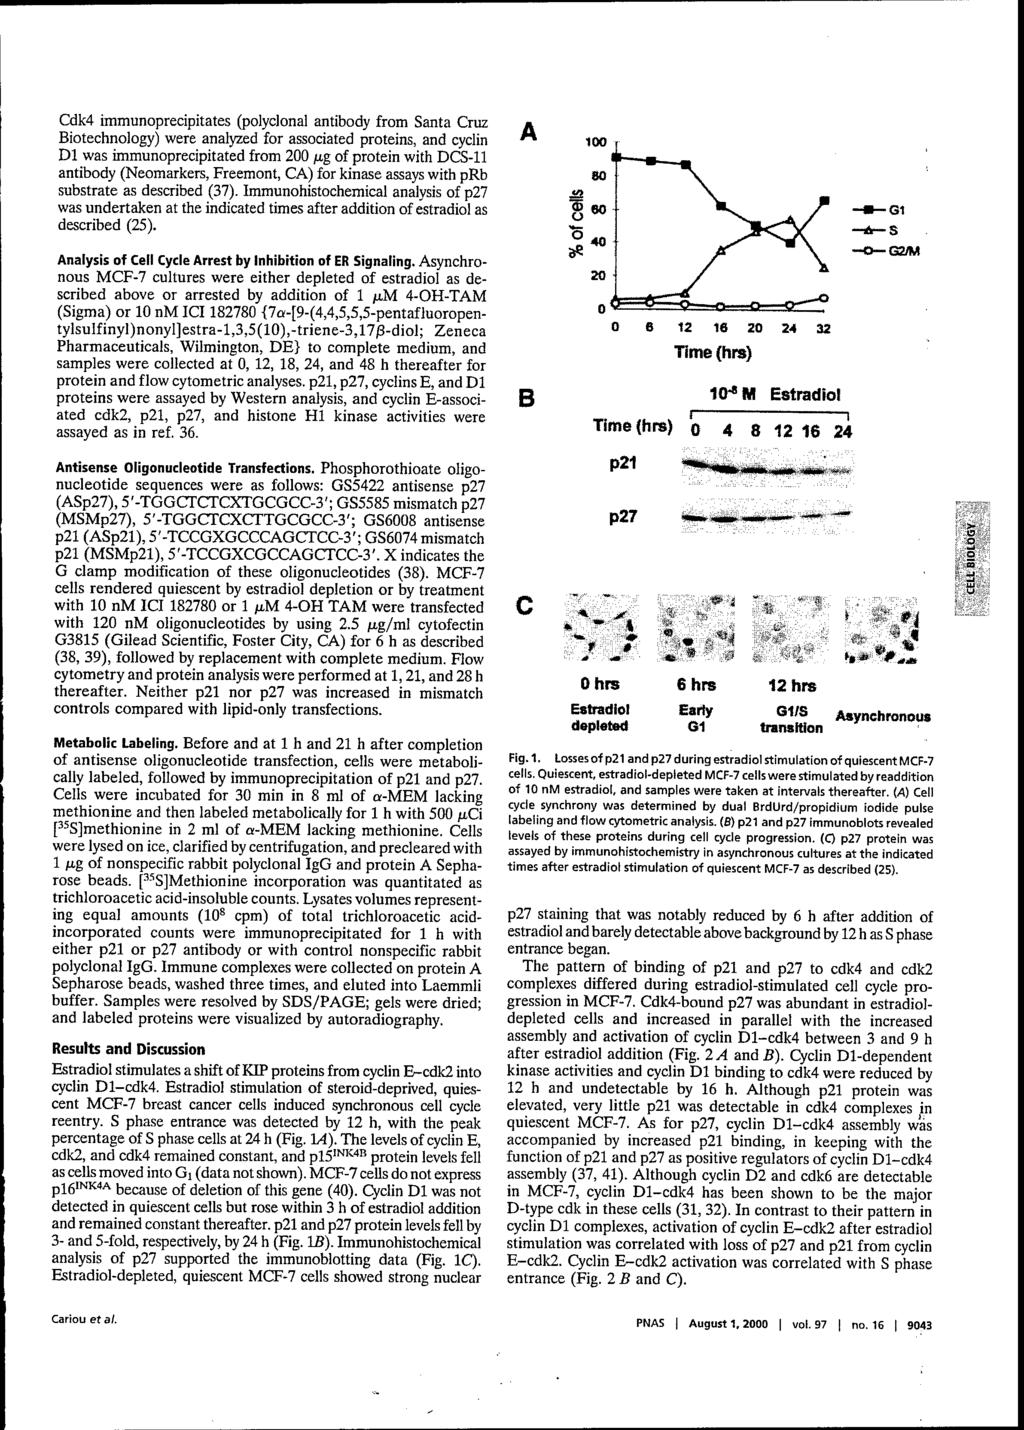 Cdk4 immunoprecipitates (polyclonal antibody from Santa Cruz Biotechnology) were analyzed for associated proteins, and cyclin Dl was immunoprecipitated from 200 jag of protein with DCS-11 antibody